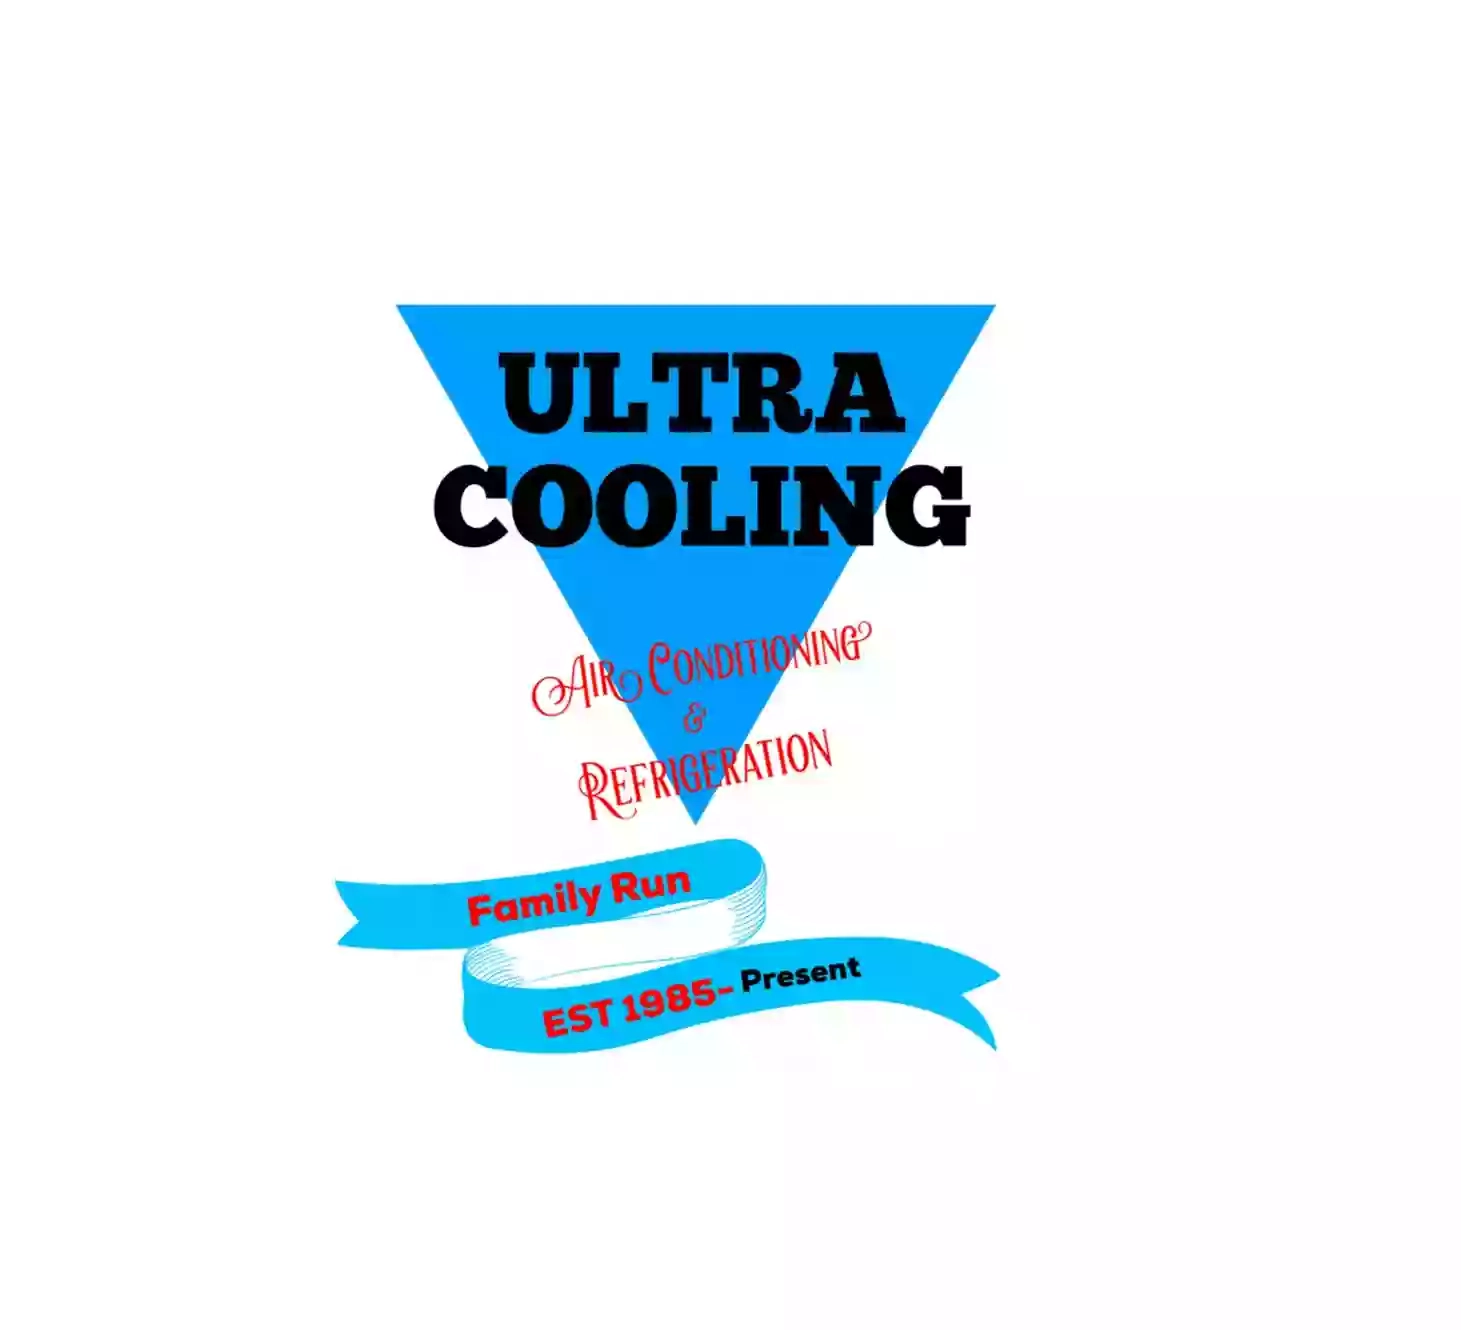 Ultra Cooling Ltd